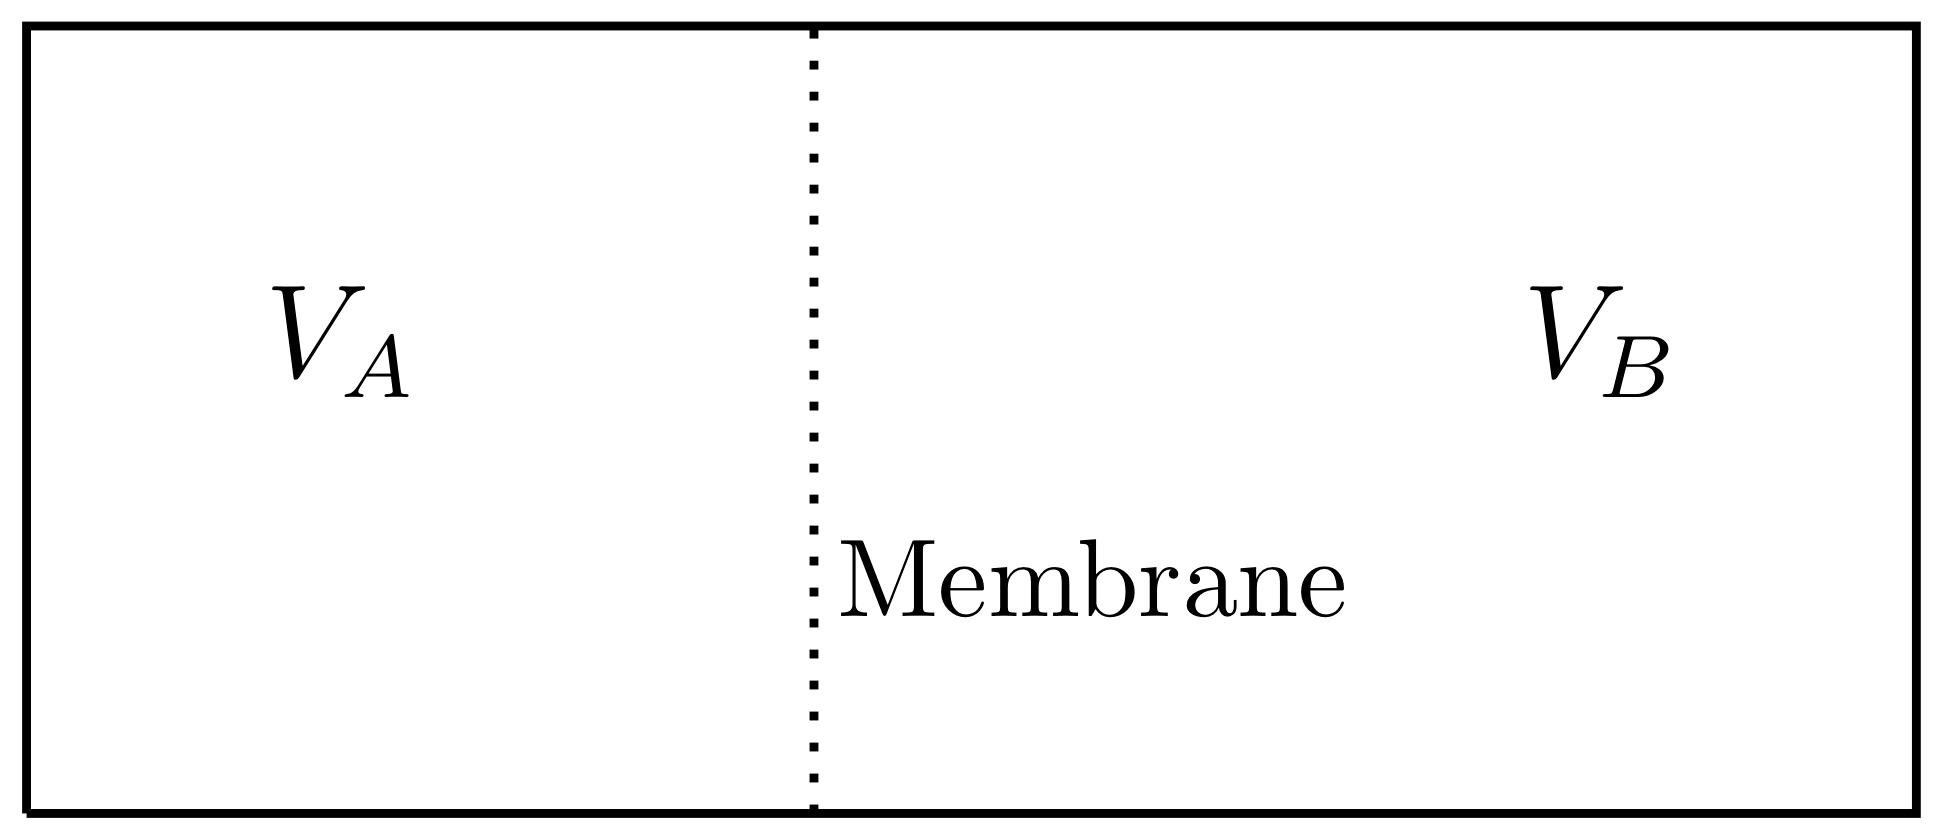 VB :Membrane